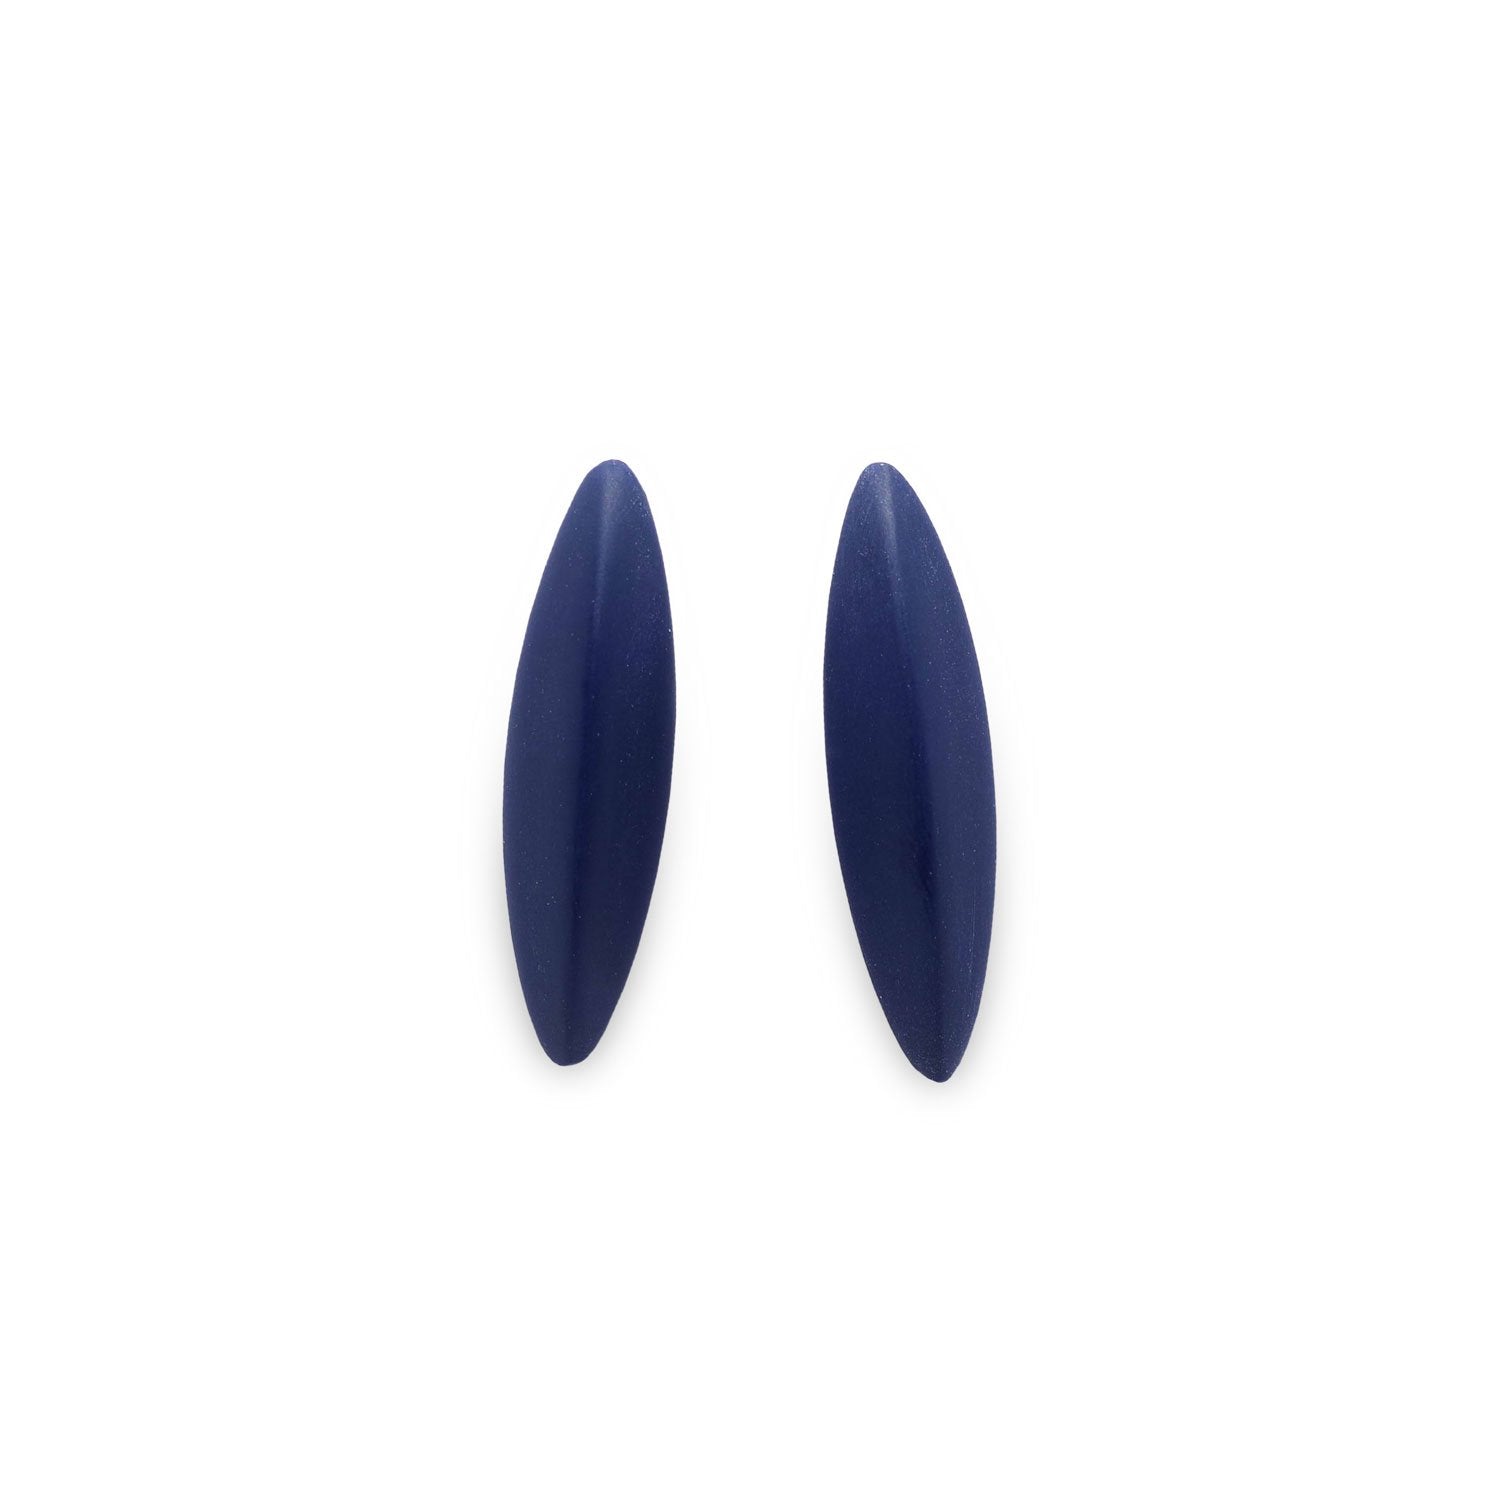 LEAVES earrings, marine blue